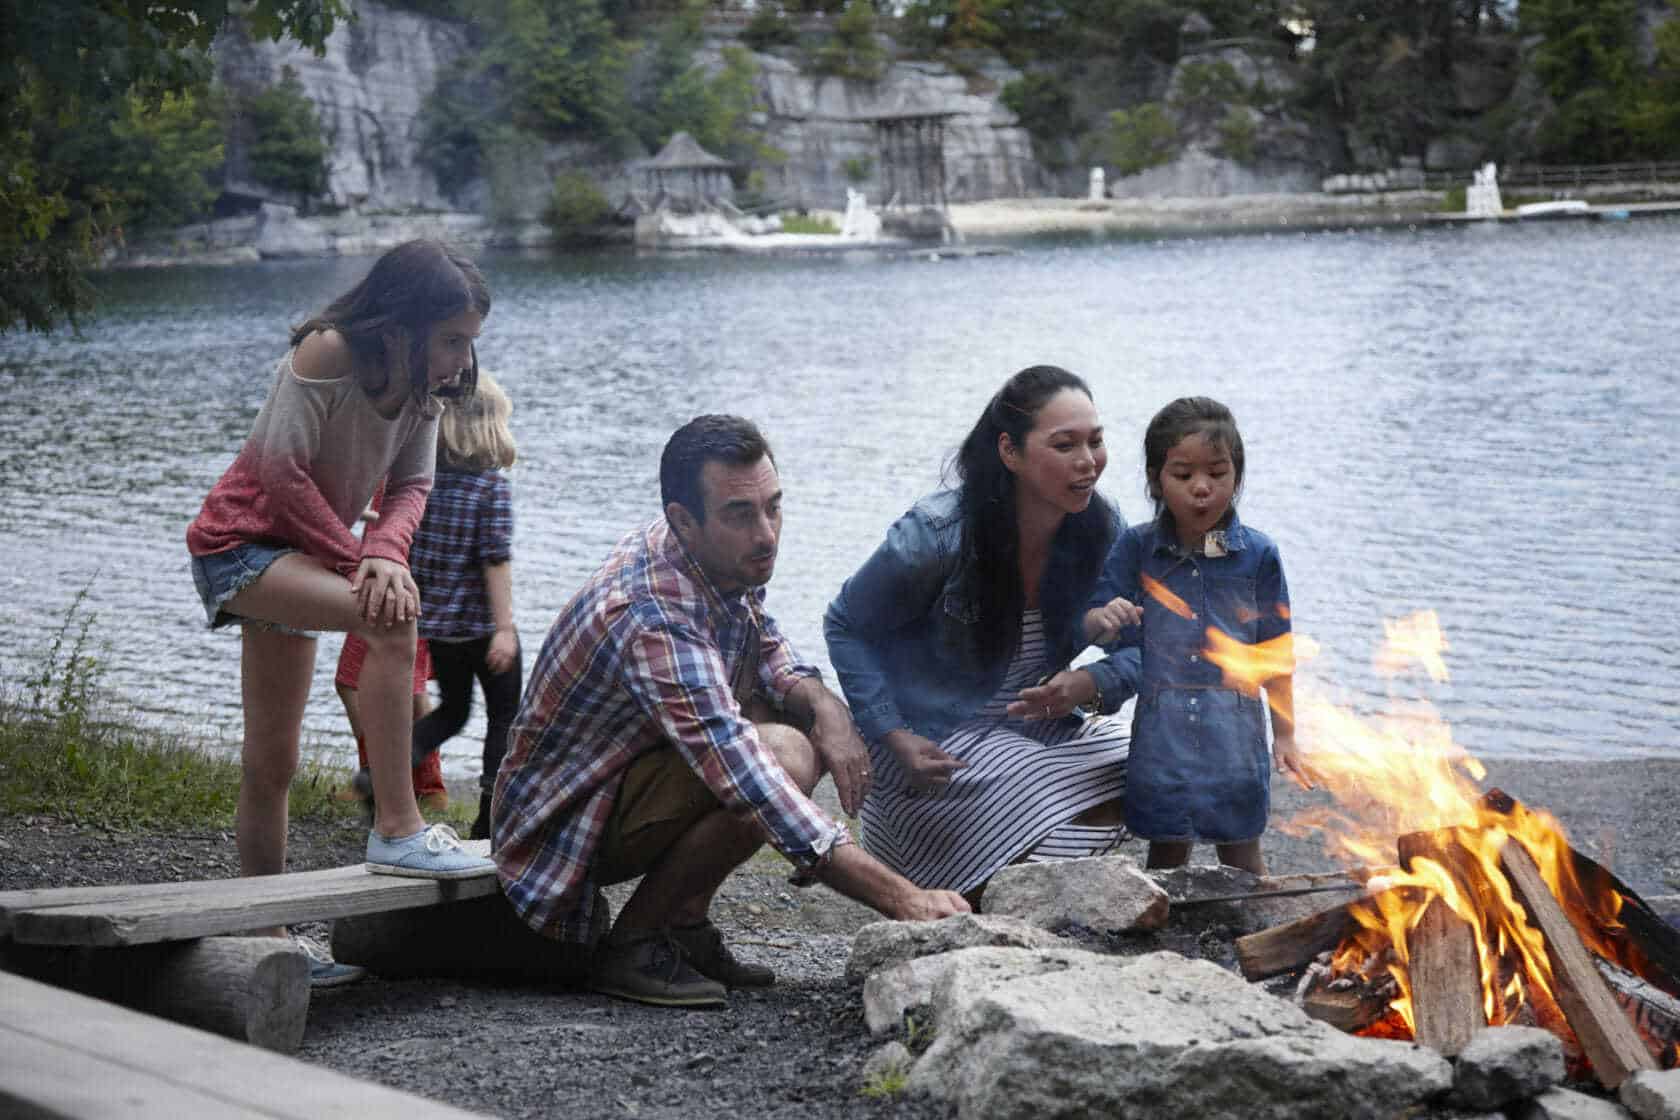 Family roasting marshmallows over campfire near Lake Mohonk